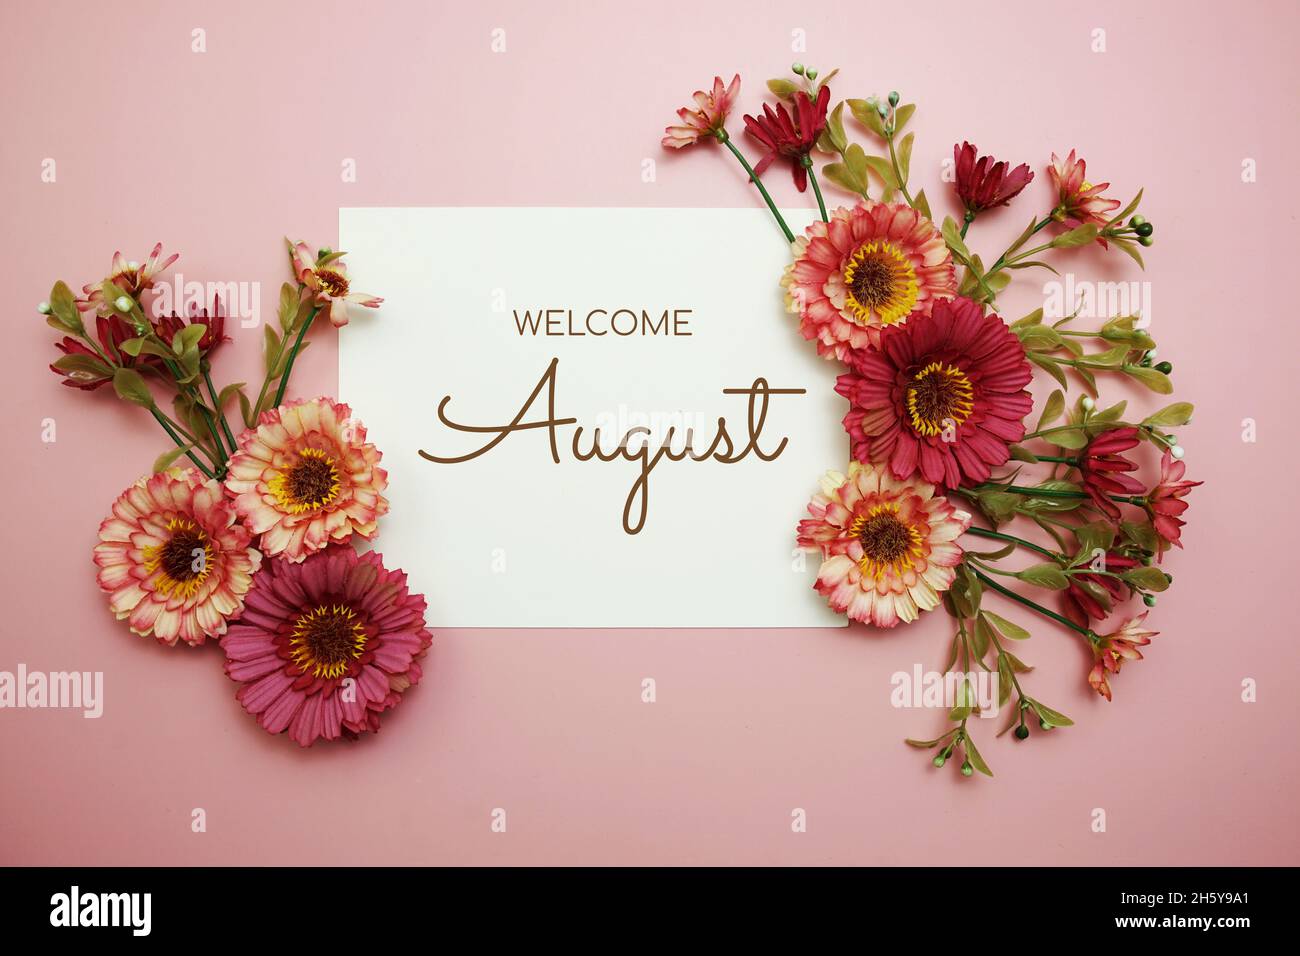 Bienvenido Texto tipográfico de agosto con flores sobre fondo rosa  Fotografía de stock - Alamy